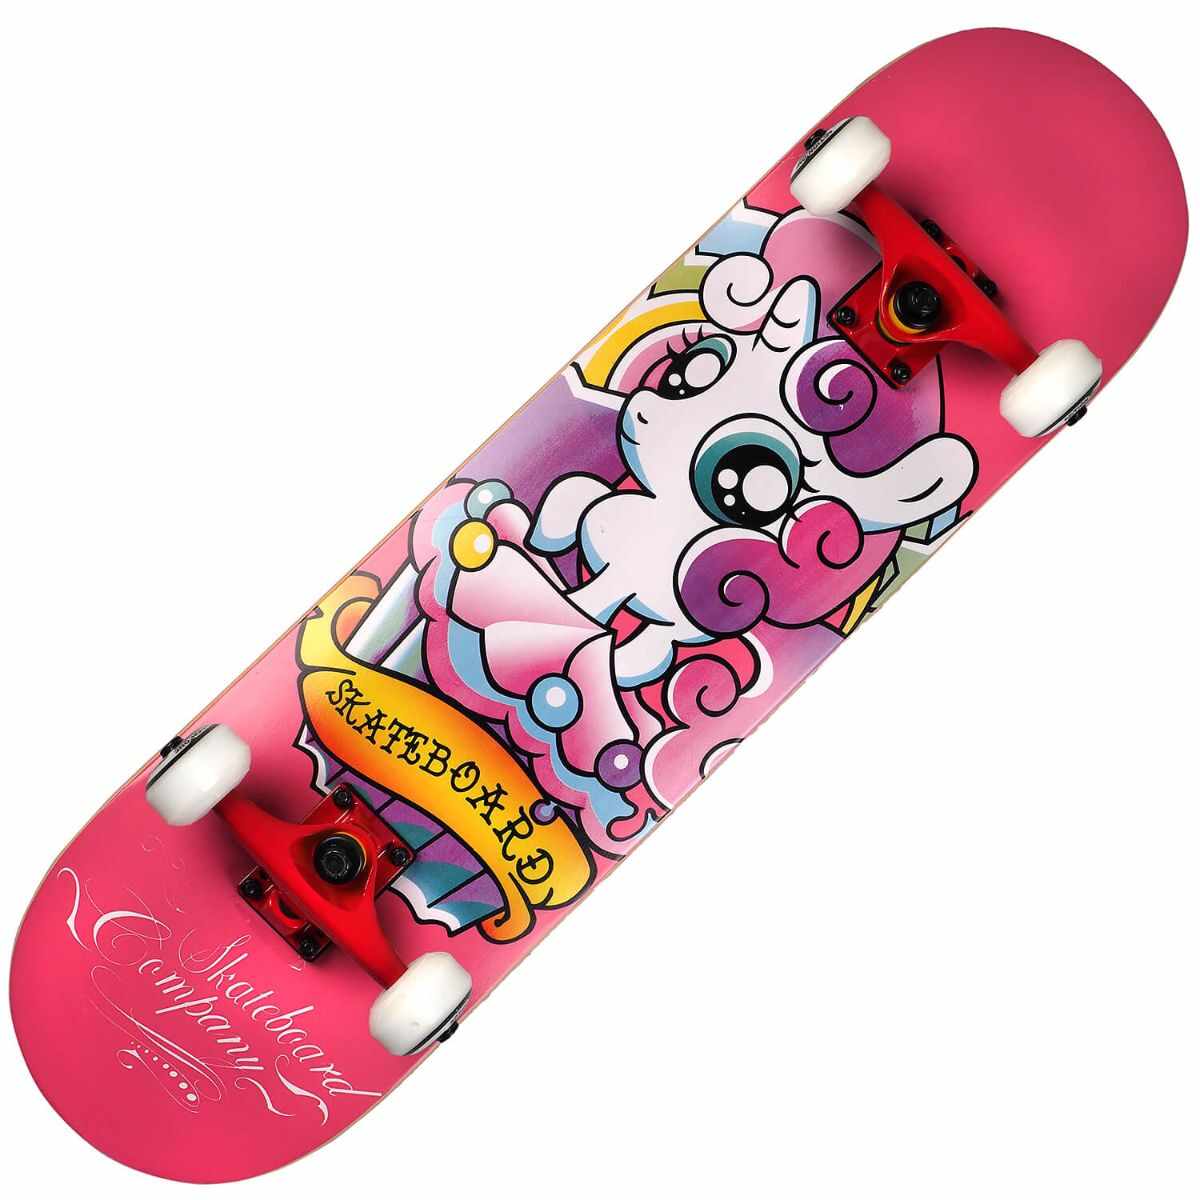 Skateboard Action One, ABEC-7 Aluminiu, 80 x 20 cm, Roz Girly Unicorn